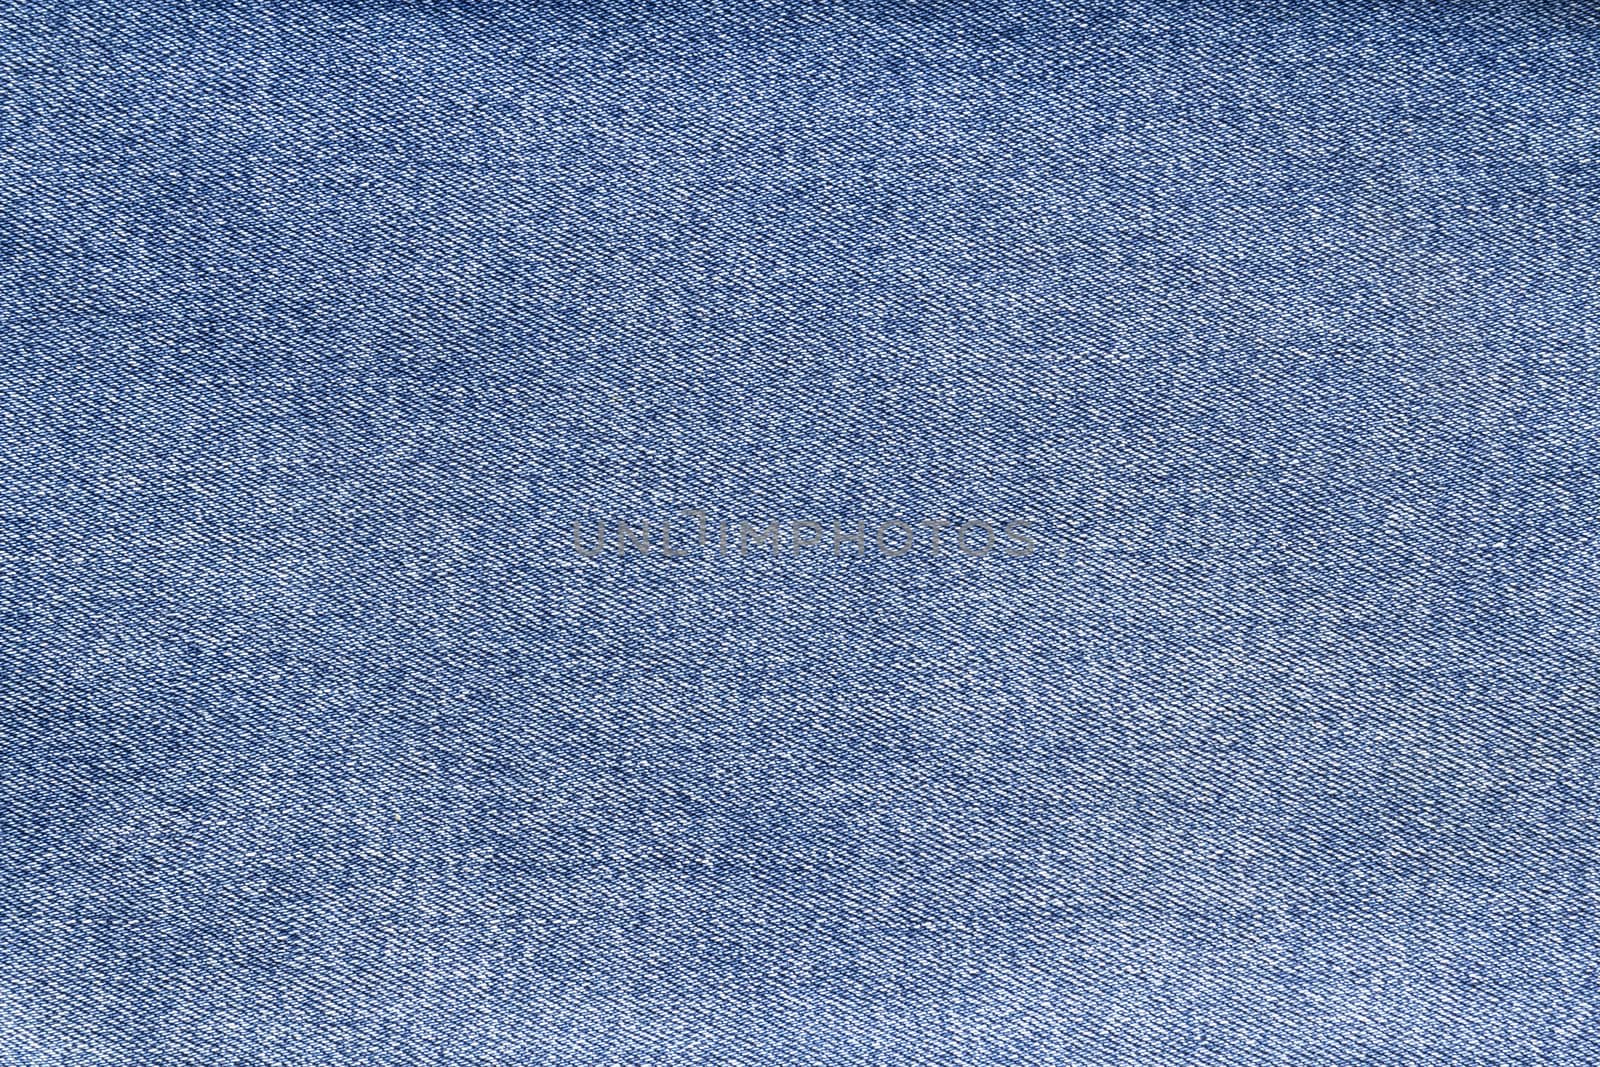 Blue denim jeans texture by sergeizubkov64